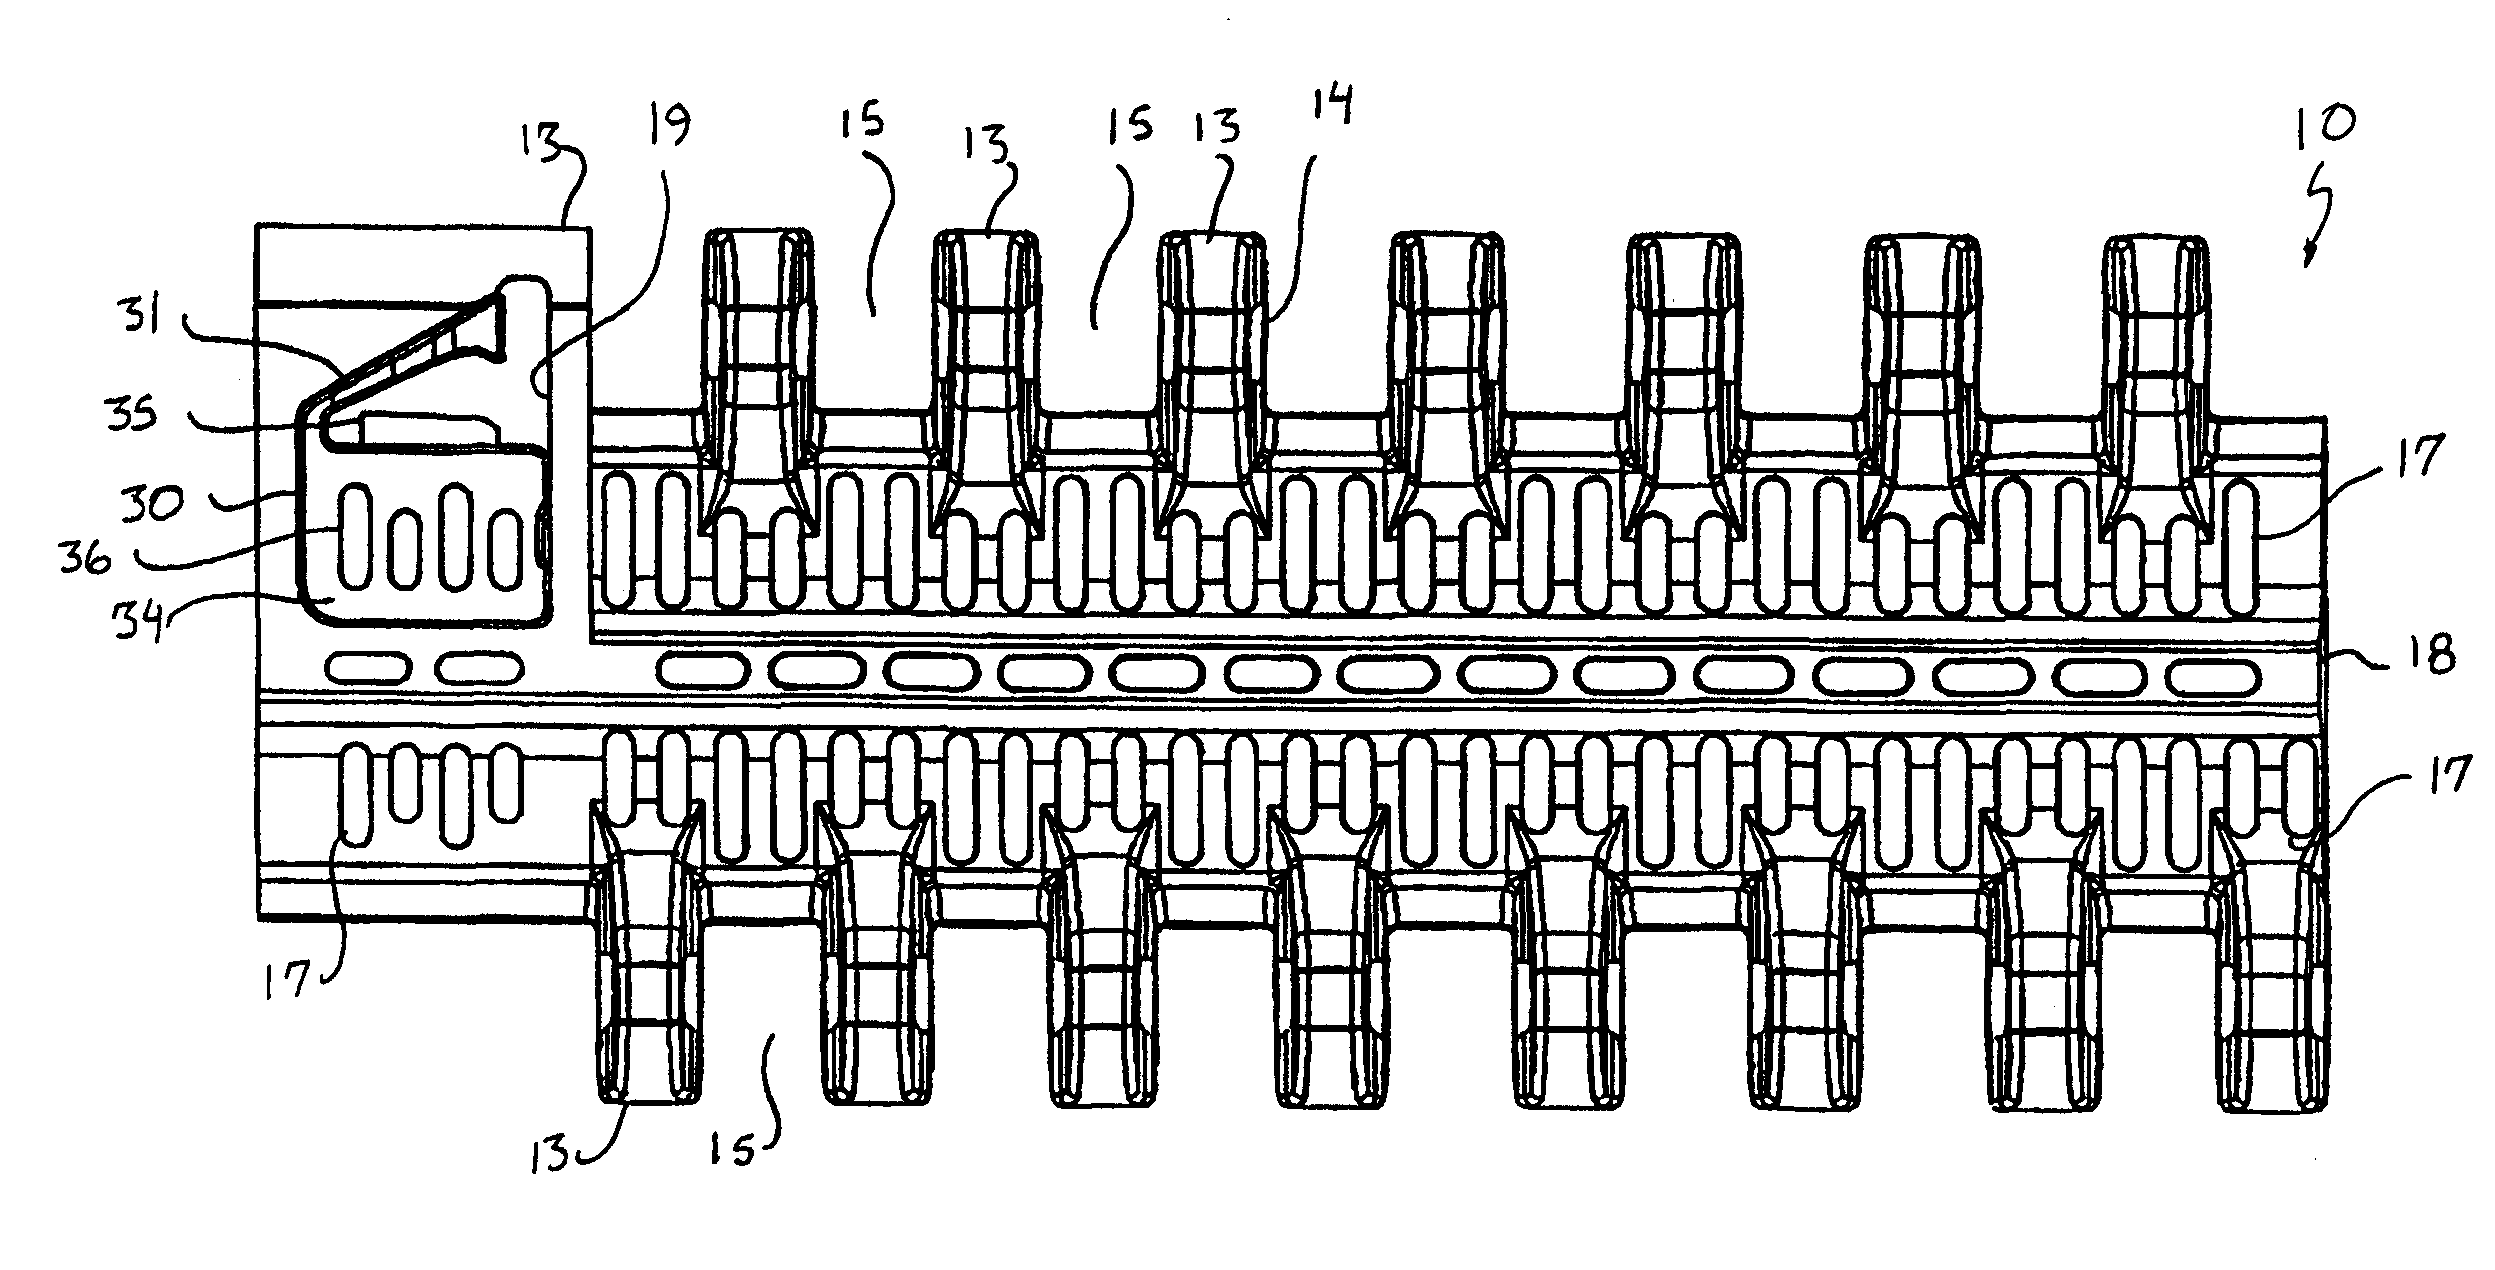 Module for a Modular Conveyor Belt